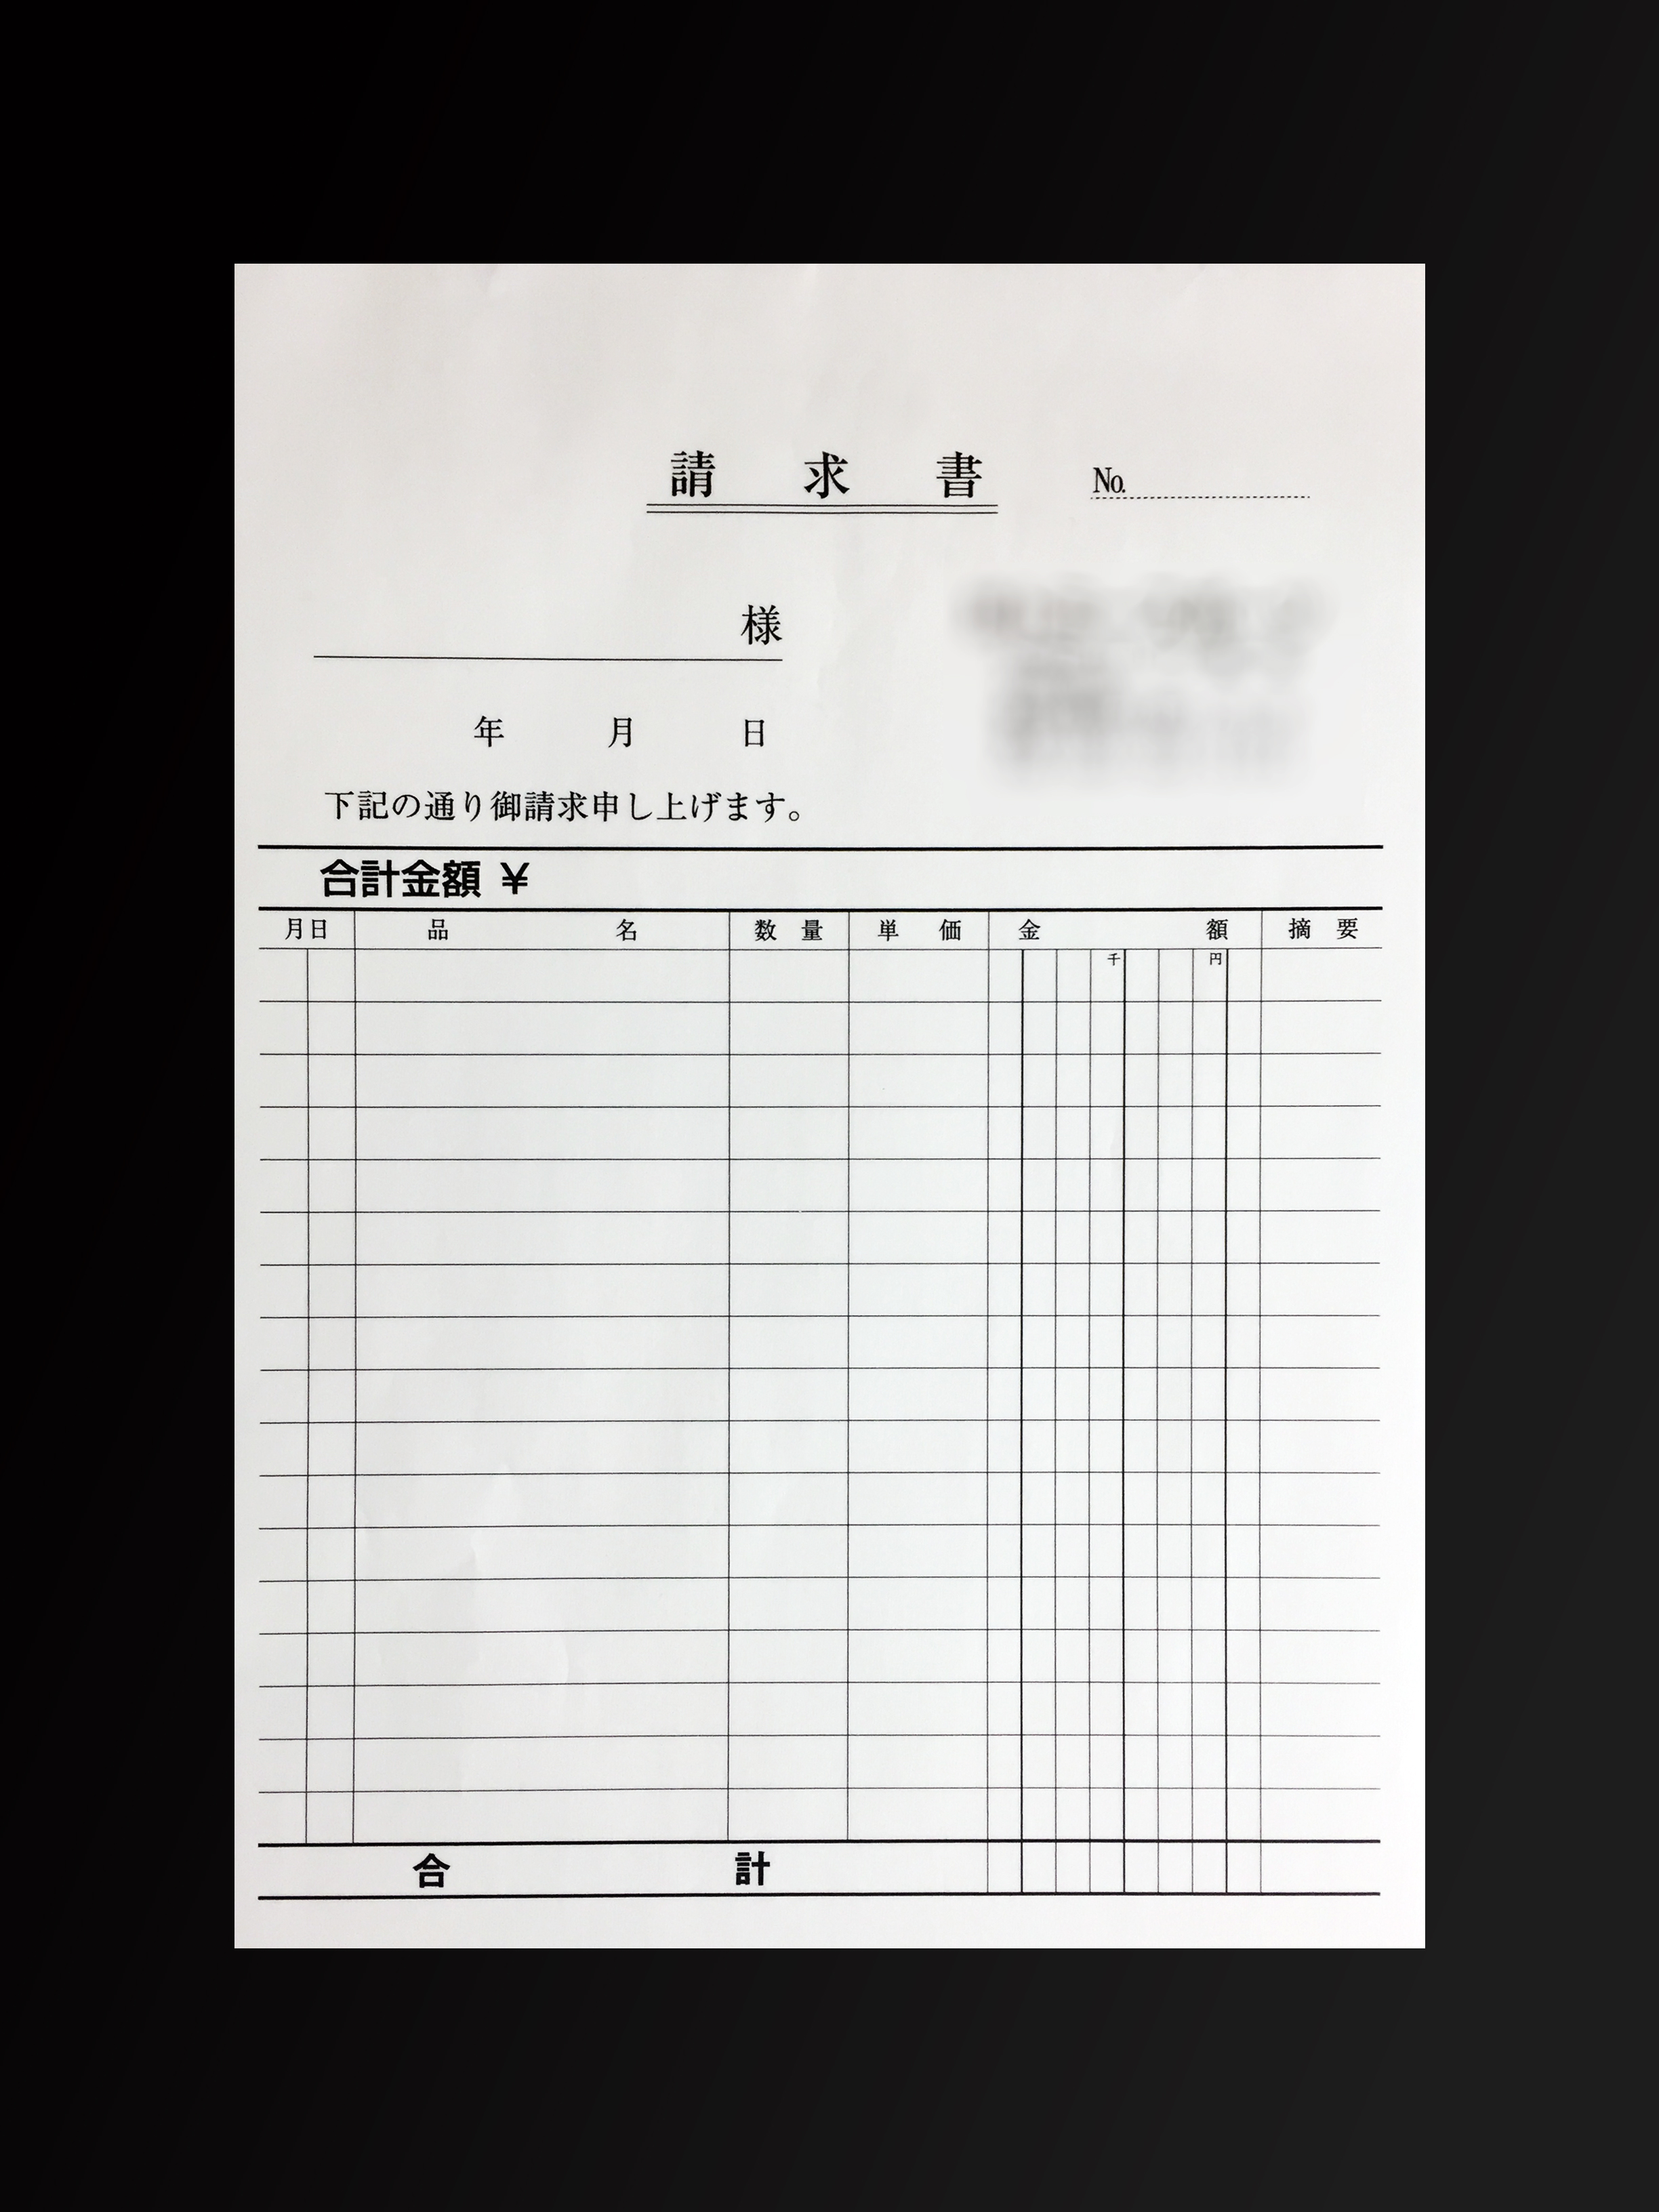 スポーツショップで使用する請求書(2枚複写)の伝票作成実績